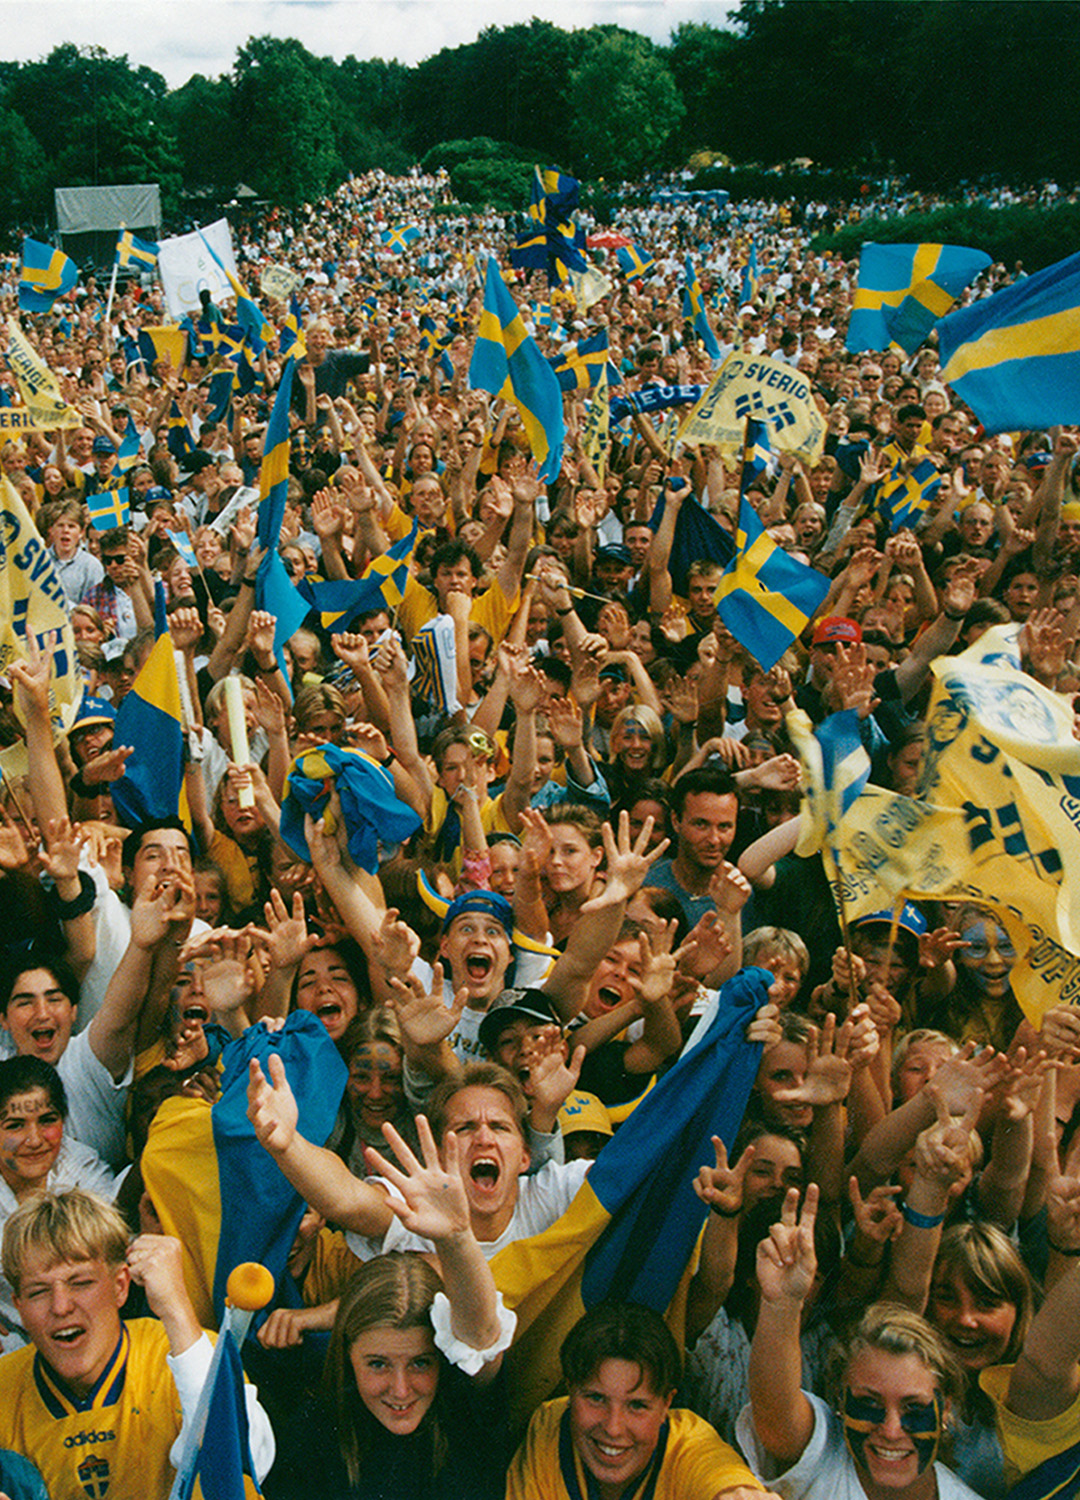 En glad folkmassa som sträcker sig mot kameran i ett jubel. I folkhavet syns många svenska flaggor.